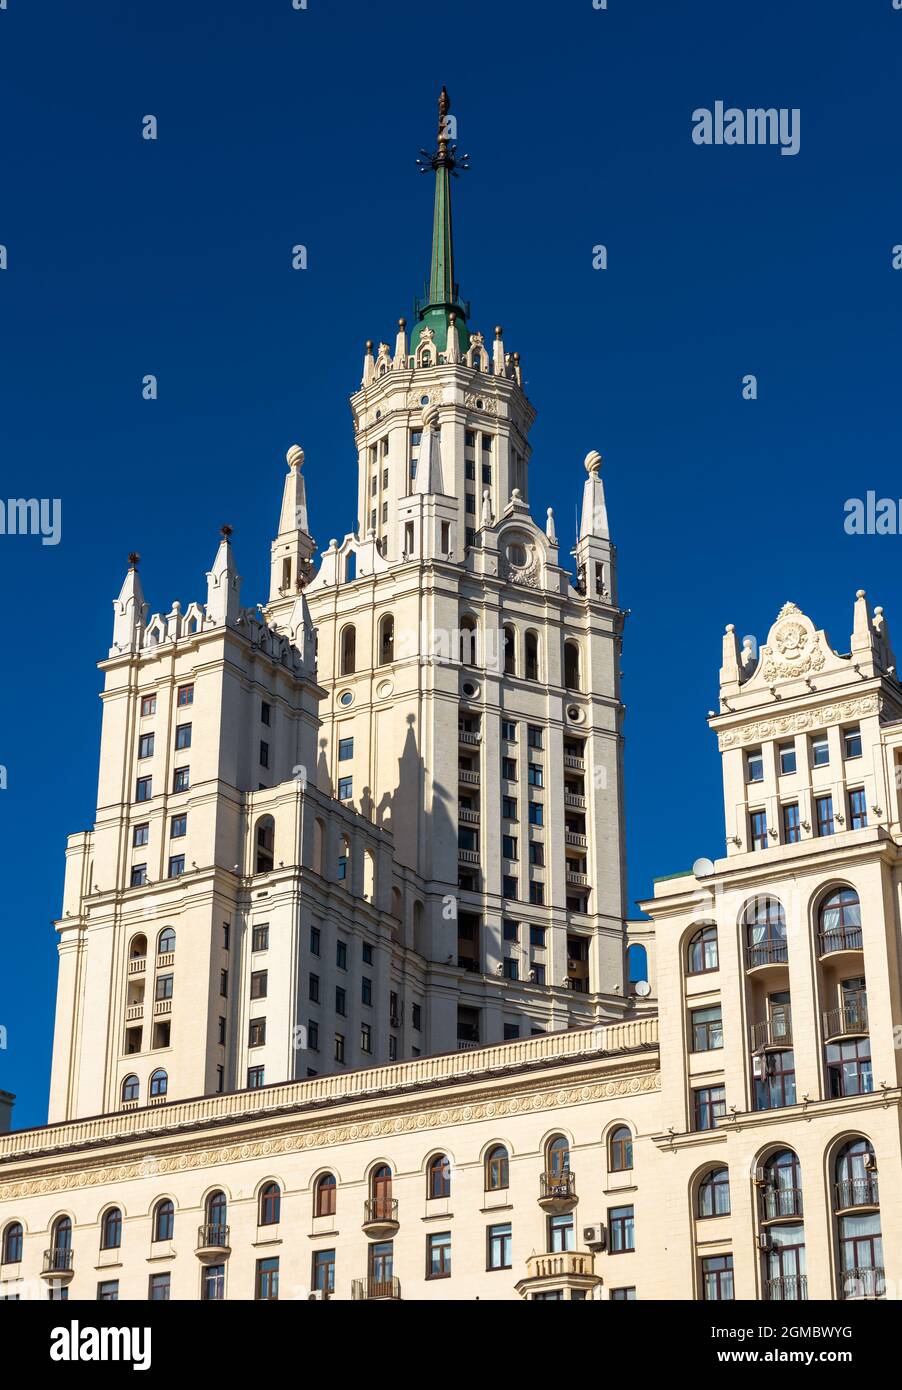 Gebäude am Kotelnicheskaya-Ufer, Moskau, Russland. Dieser Wolkenkratzer wurde in der Stalin-Ära im Stadtzentrum von Moskau im sowjetischen Design gebaut. Alte russische Architektur Stockfoto